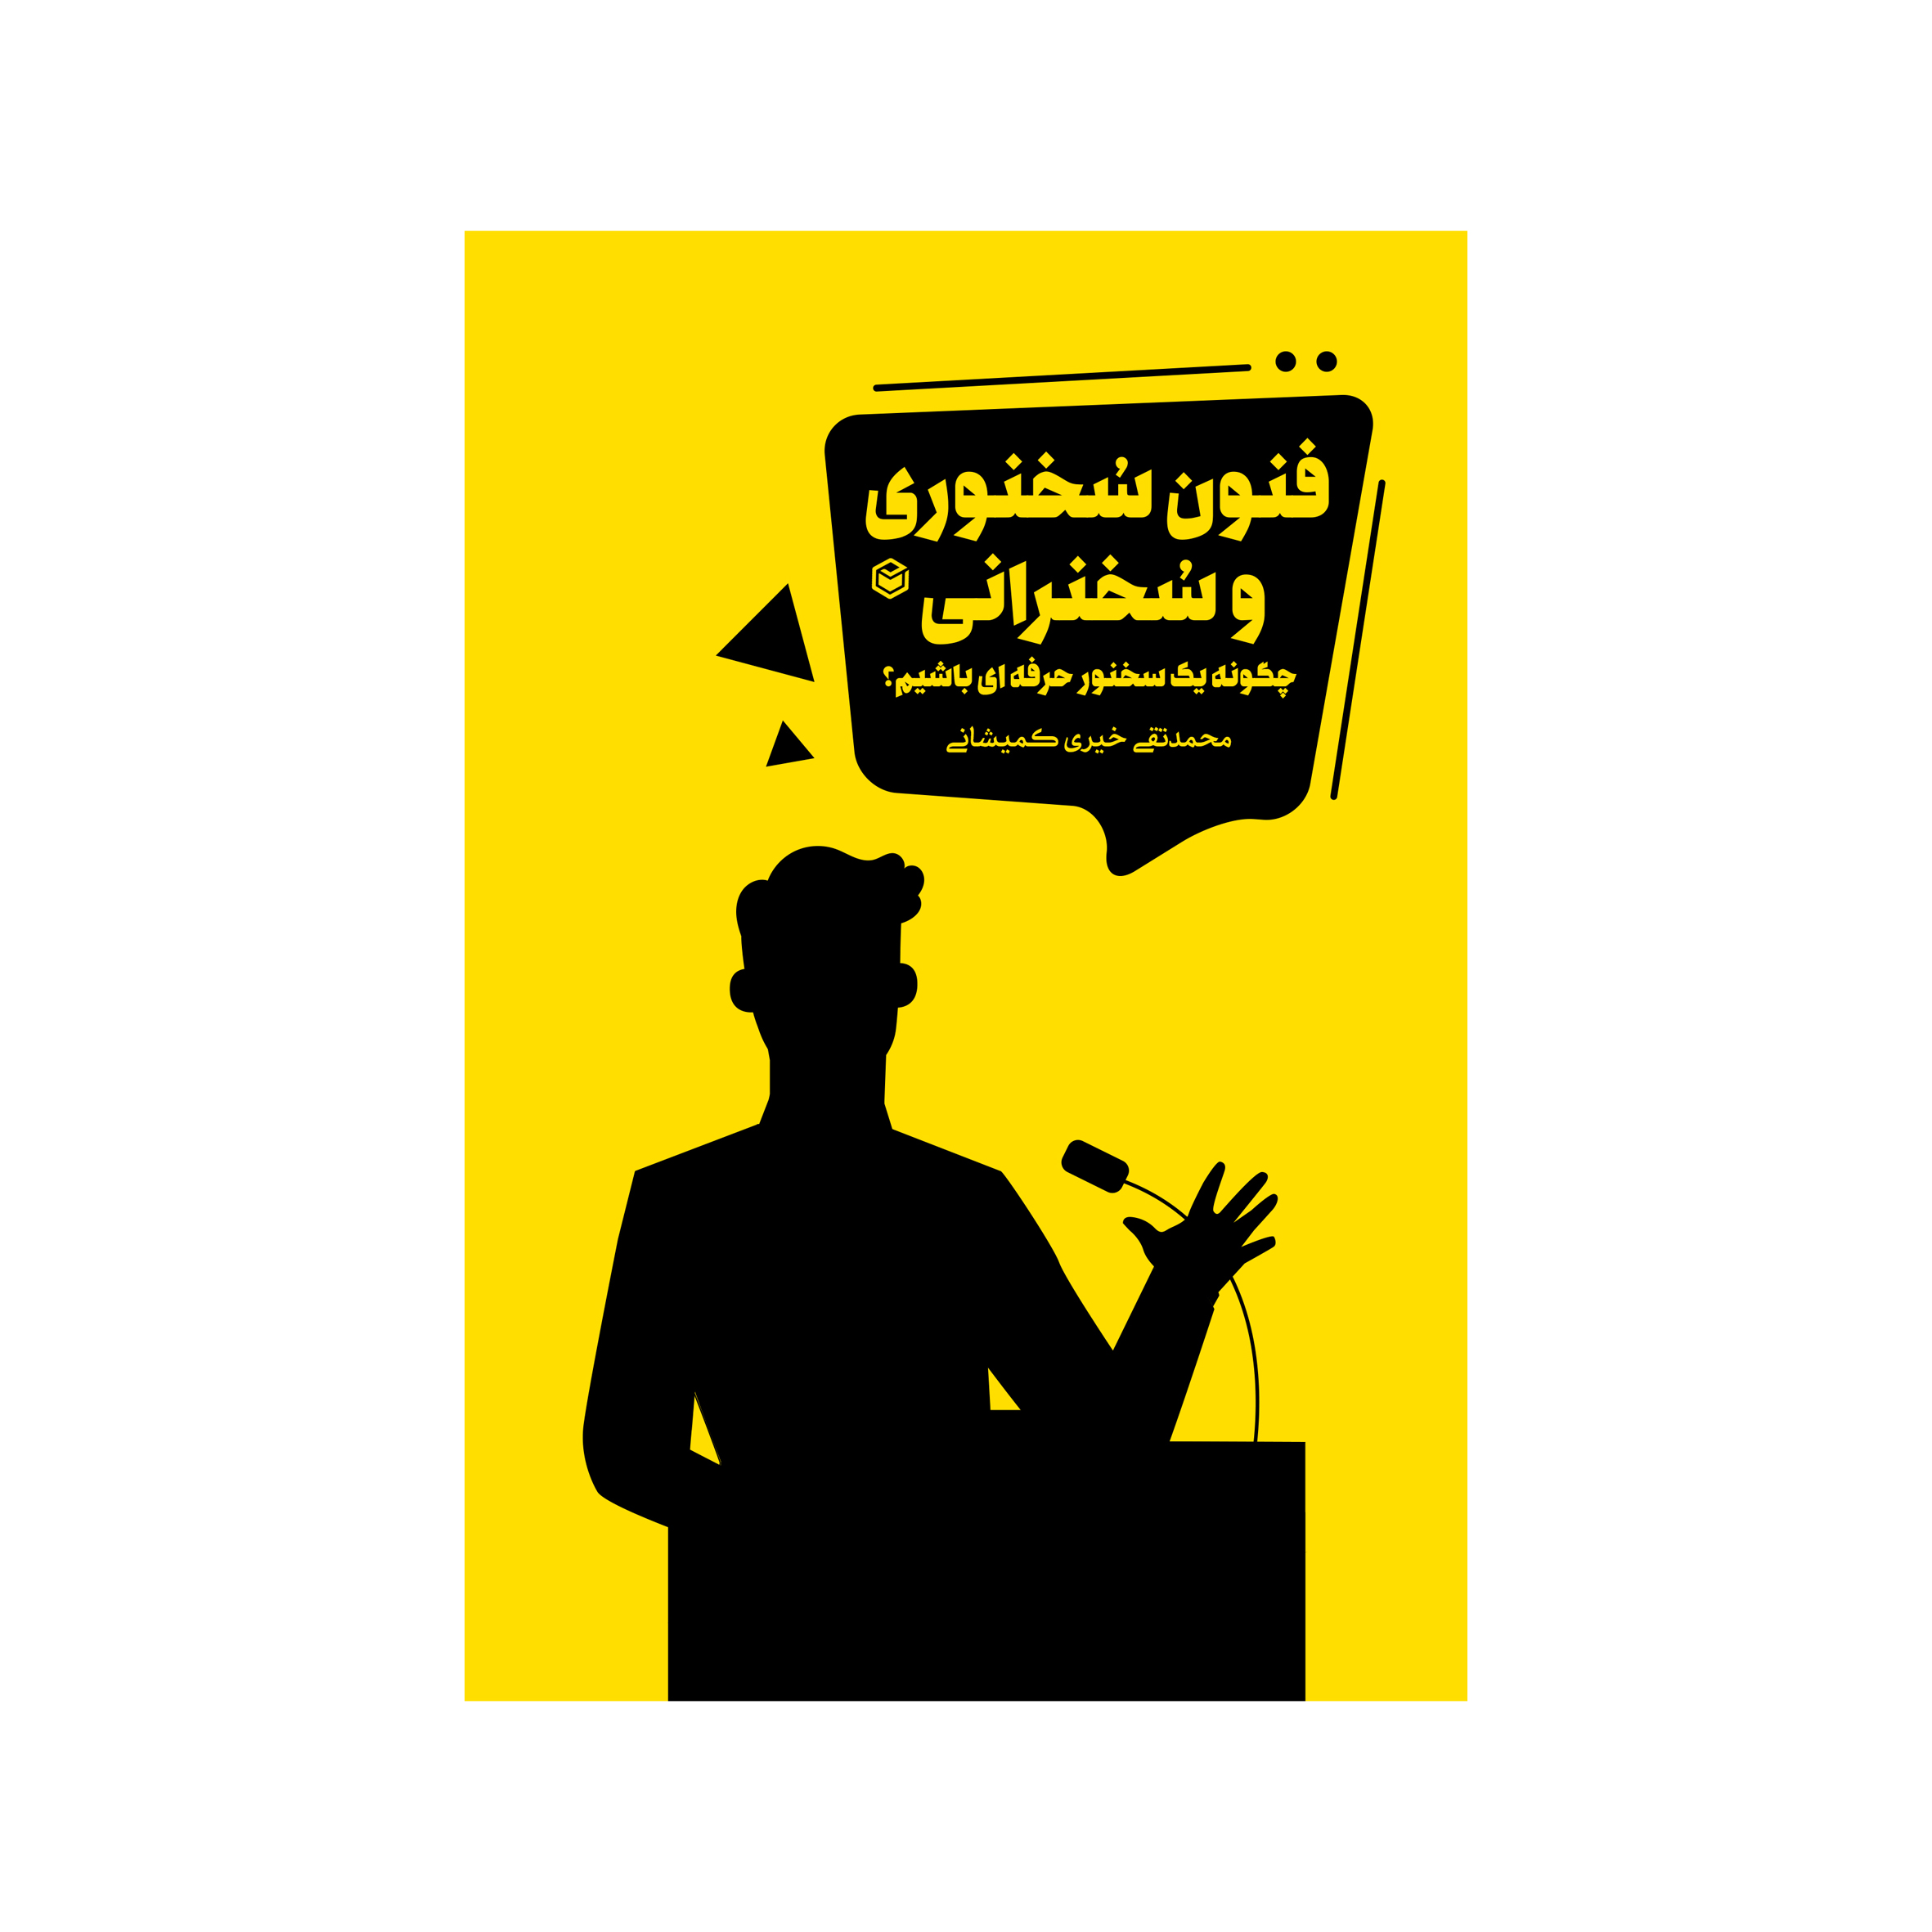 کتاب فنون سخنوری و سخنرانی چگونه یک سخنور حرفه ای باشیم؟ اثر محمد تقی خیری کمیشانی نشر متخصصان